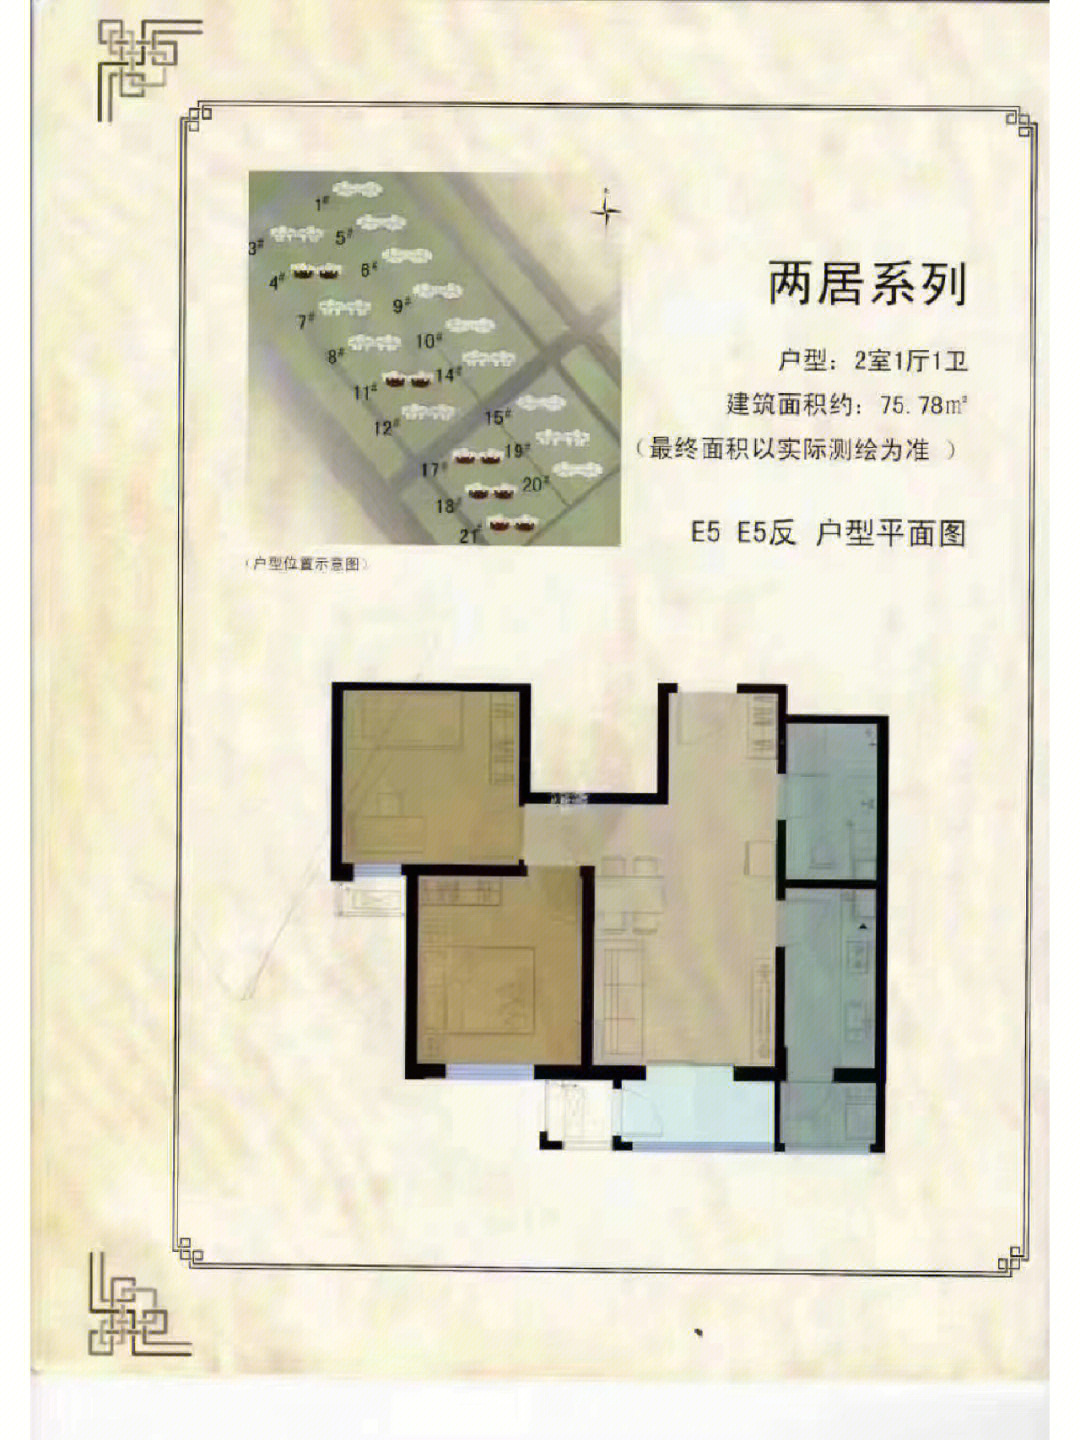 燕保百湾家园地理位置图片